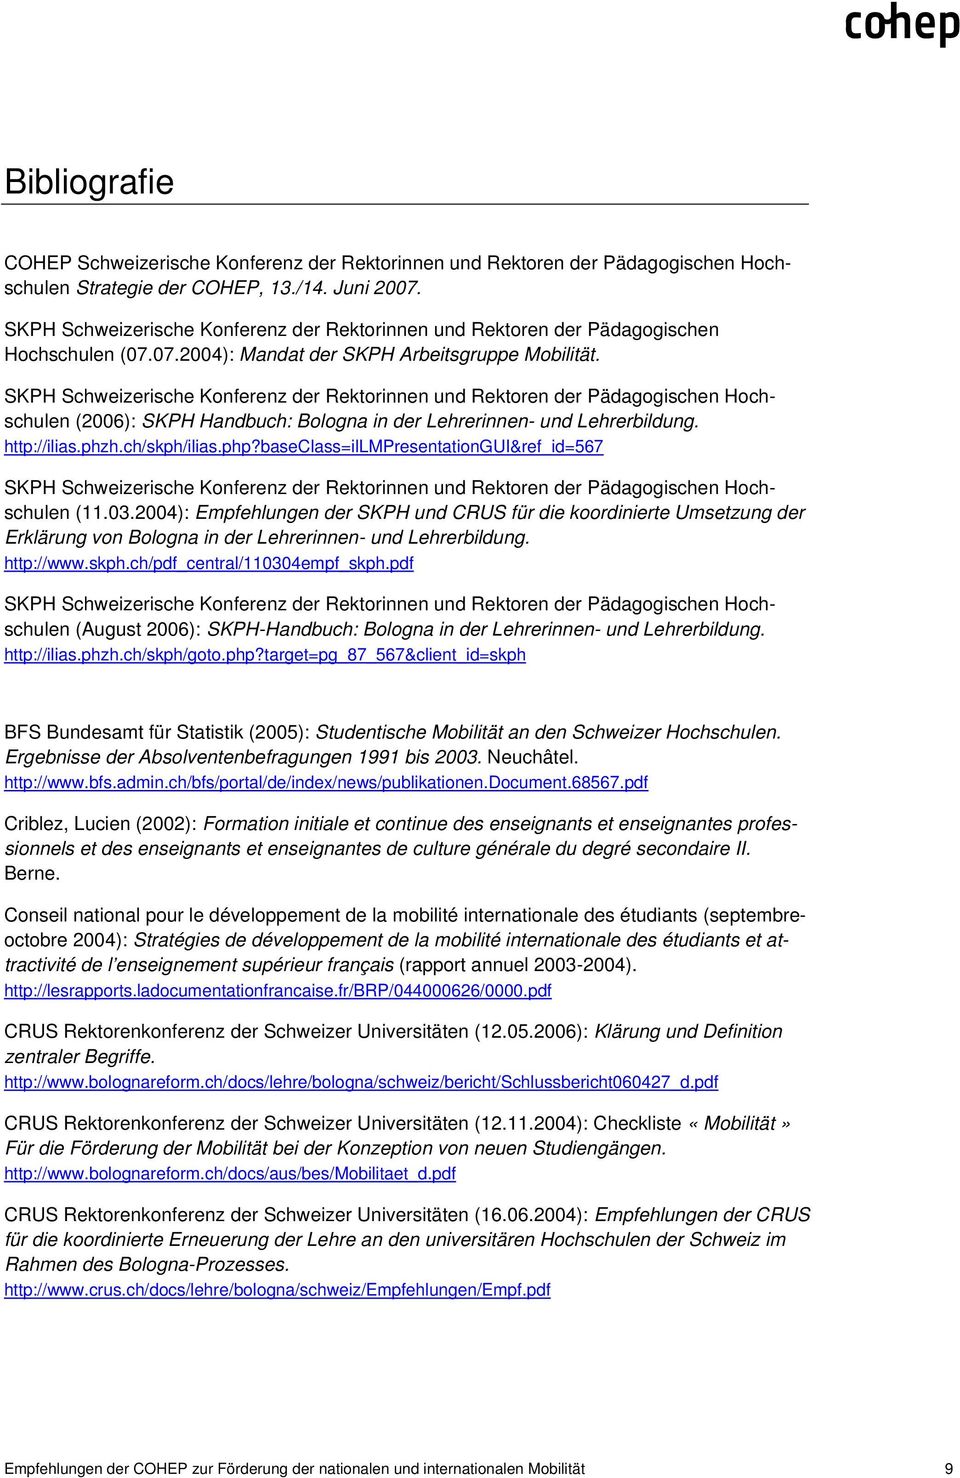 SKPH Schweizerische Konferenz der Rektorinnen und Rektoren der Pädagogischen Hochschulen (2006): SKPH Handbuch: Bologna in der Lehrerinnen- und Lehrerbildung. http://ilias.phzh.ch/skph/ilias.php?